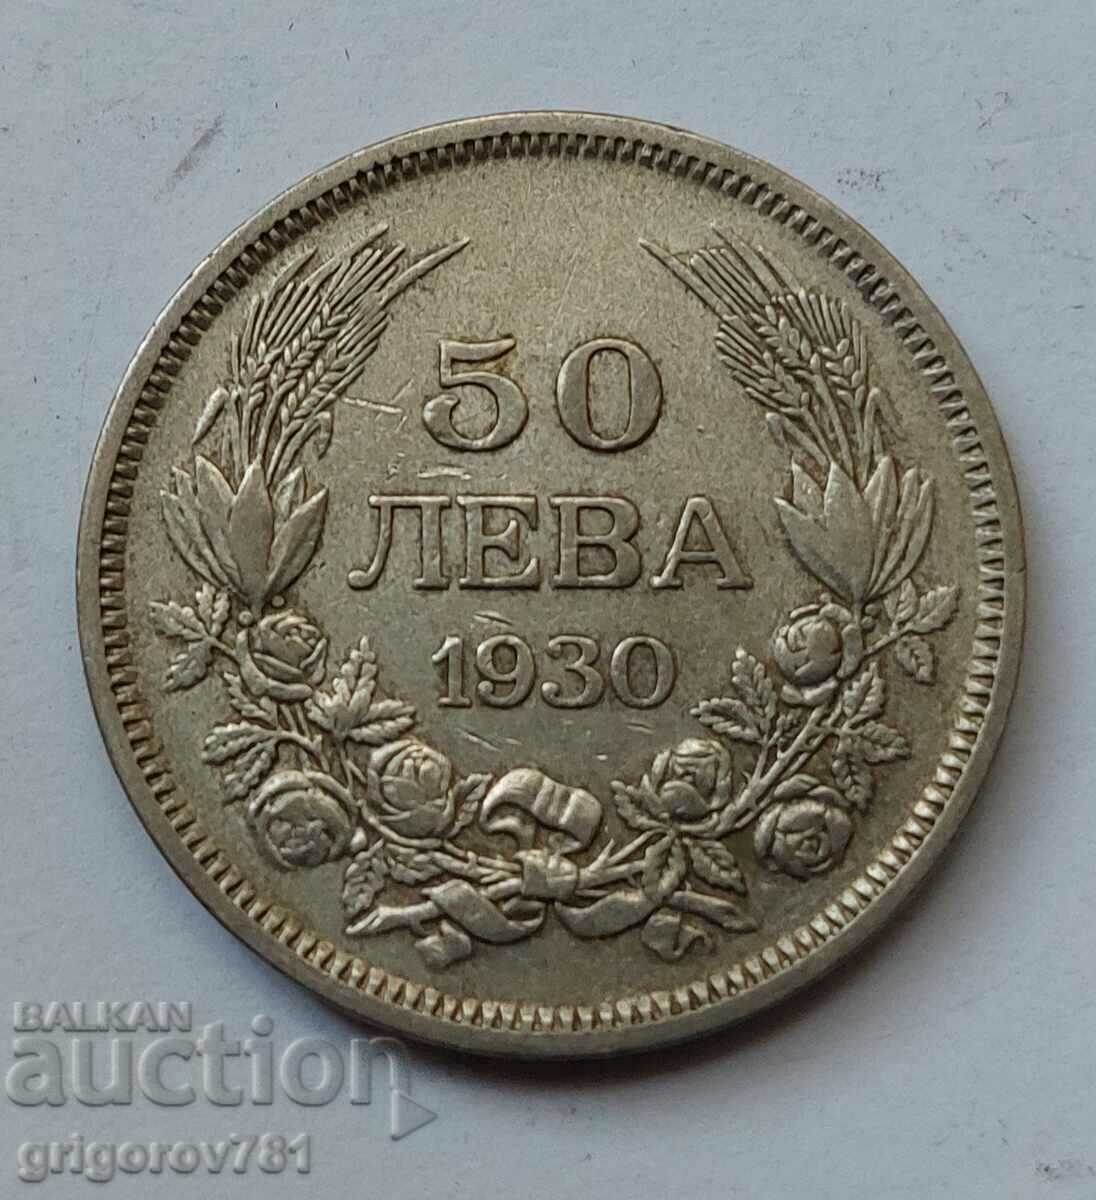 Ασήμι 50 λέβα Βουλγαρία 1930 - ασημένιο νόμισμα #85